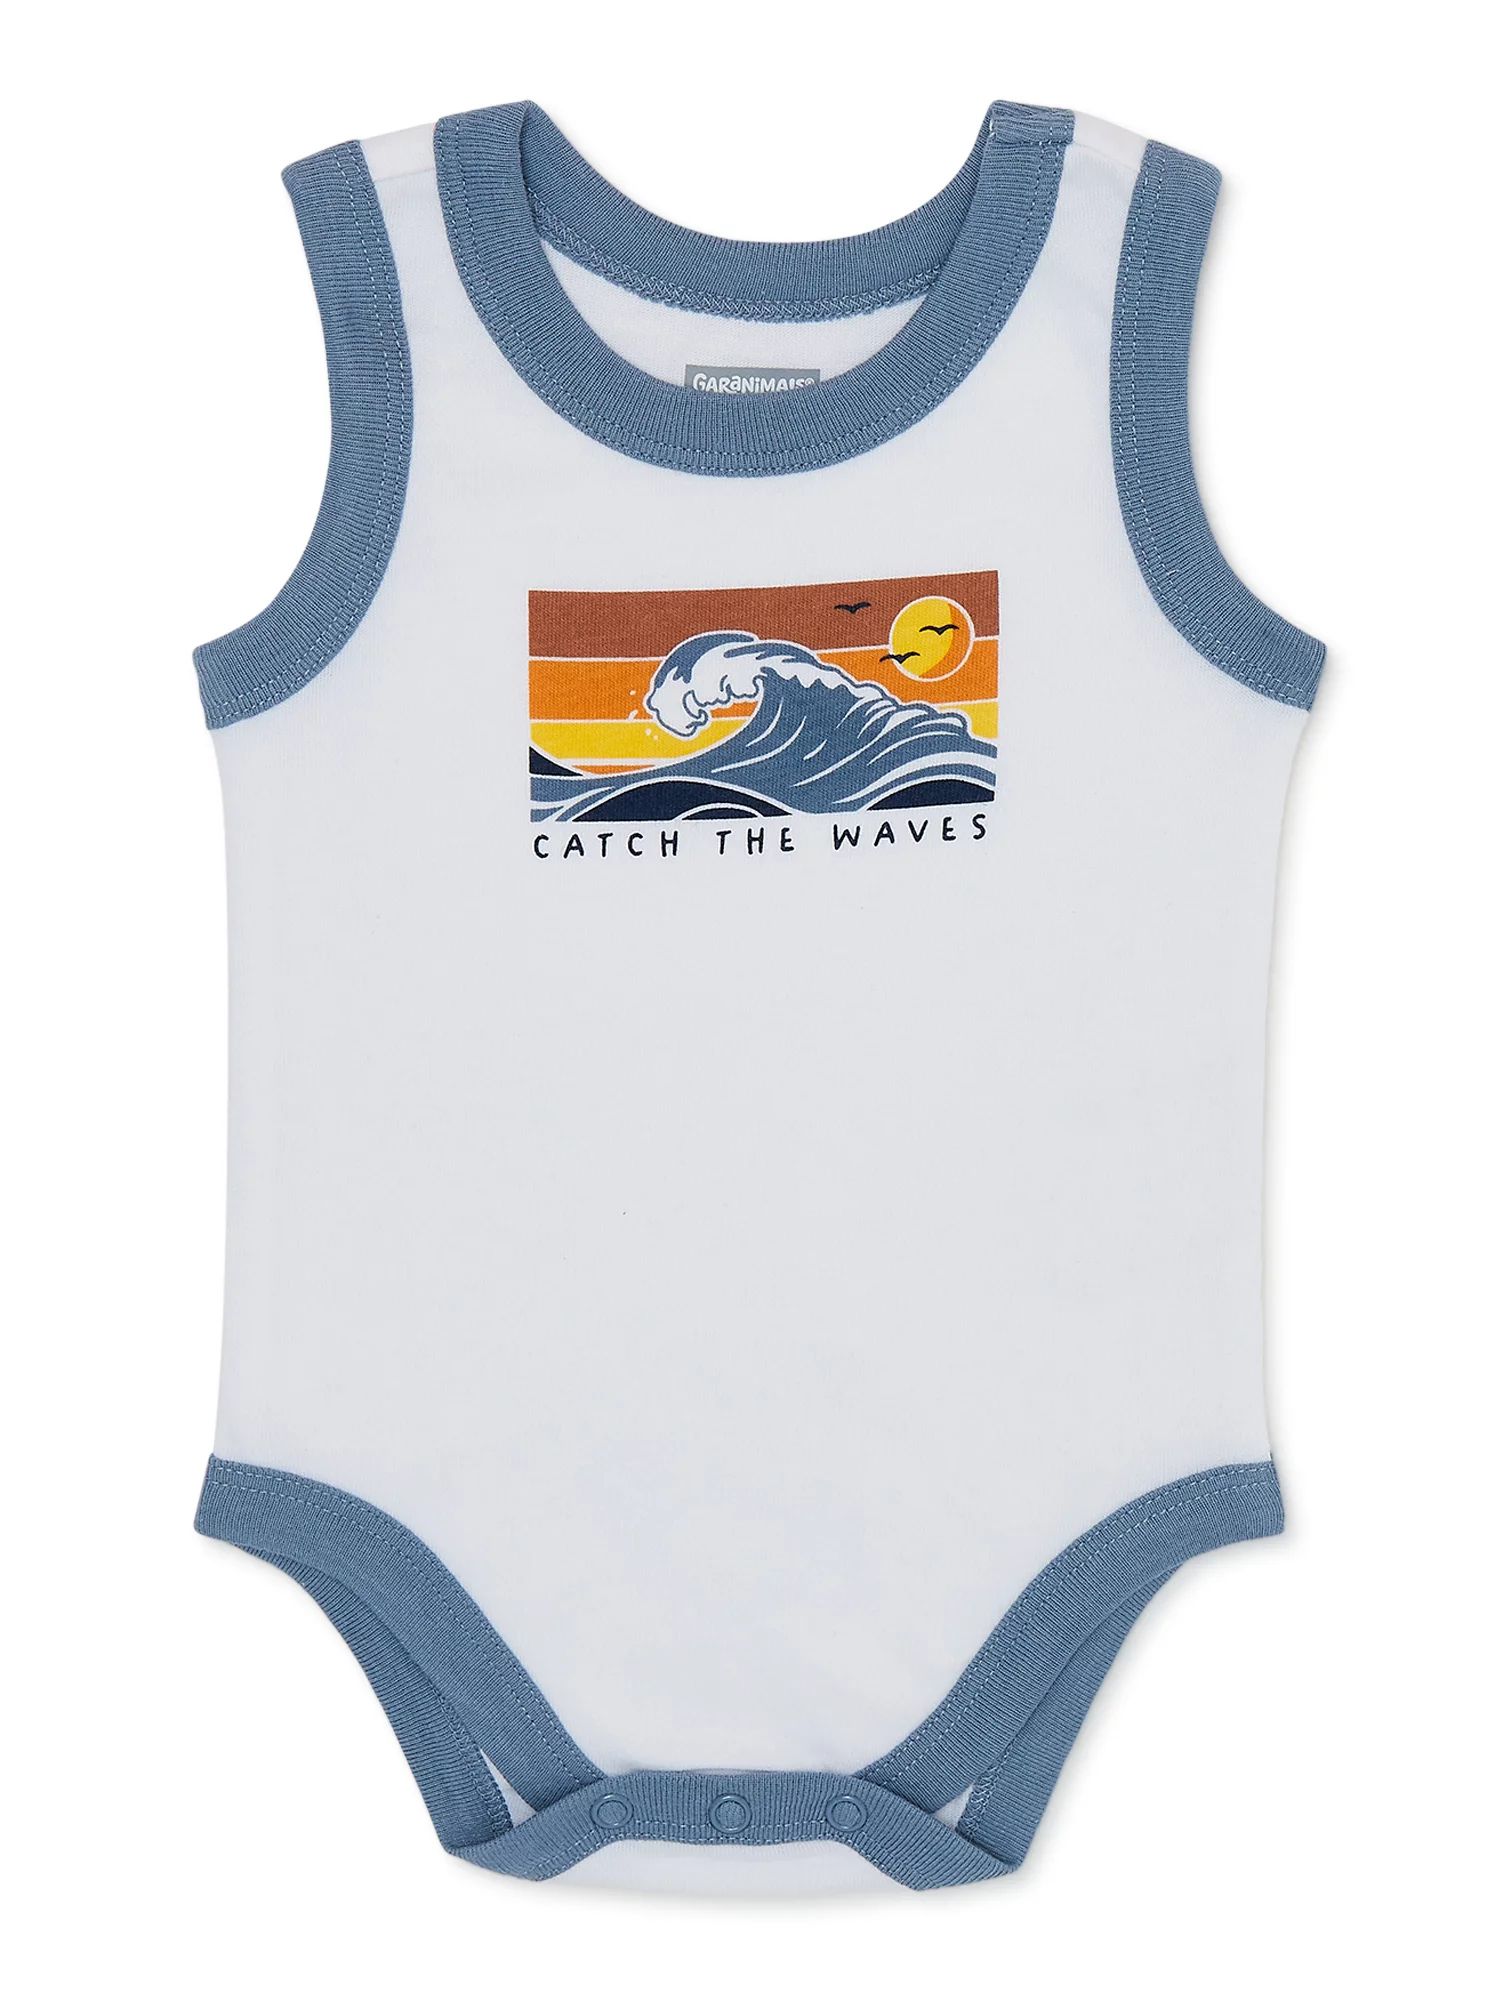 Garanimals Baby Boy Graphic Tank Bodysuit, Sizes 0-24 Months | Walmart (US)